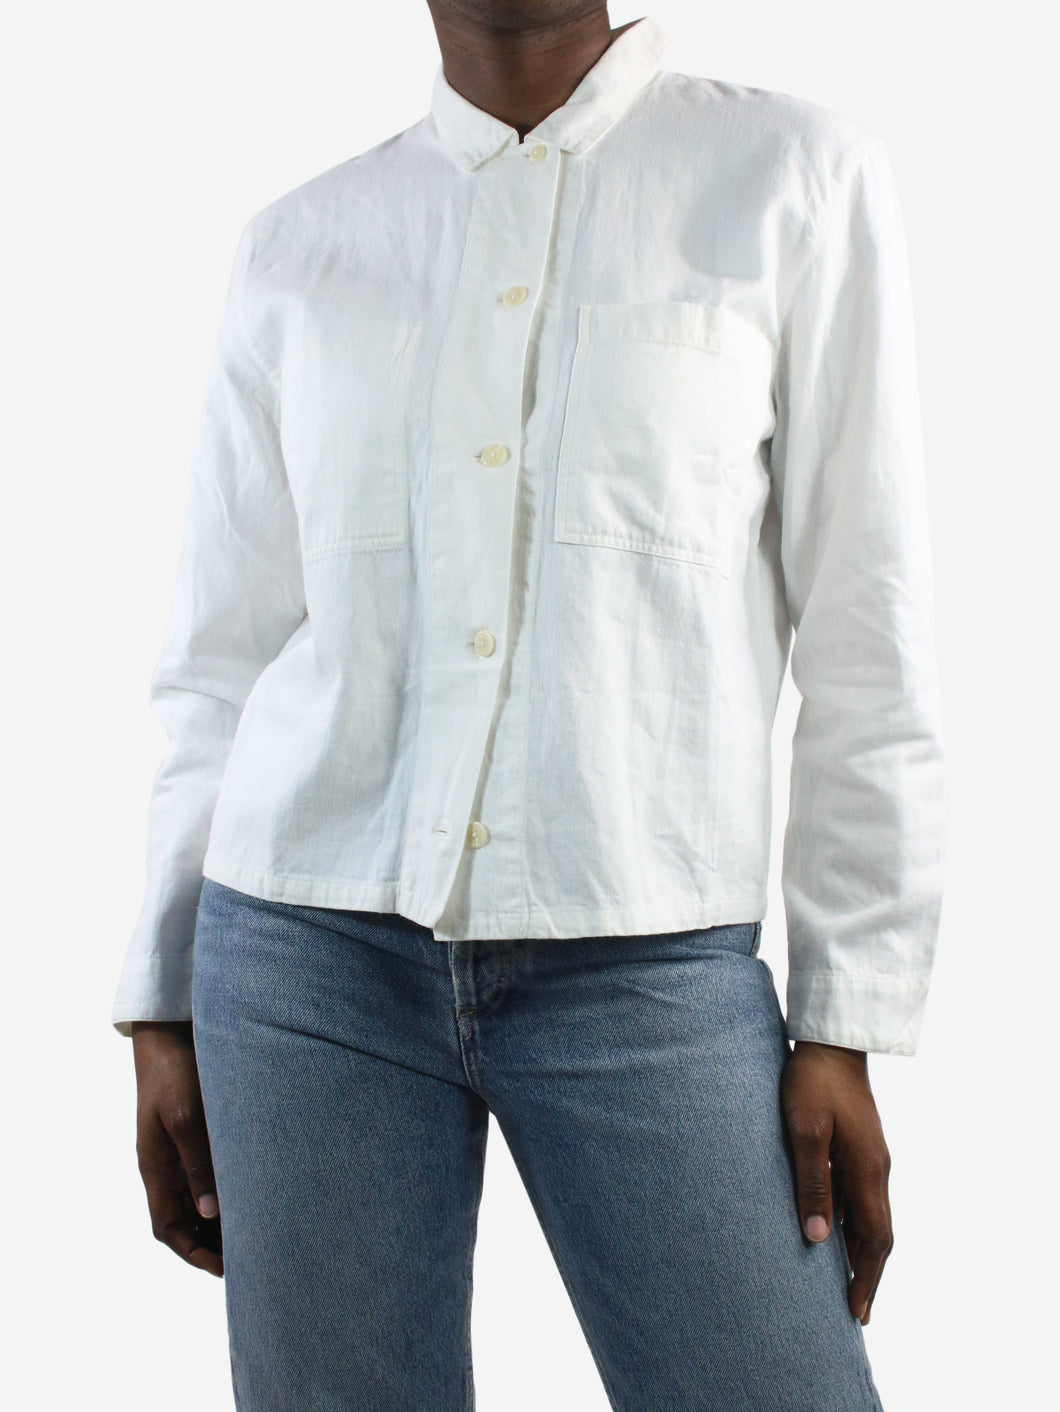 White shirt - size M Tops Margaret Howell MHL 